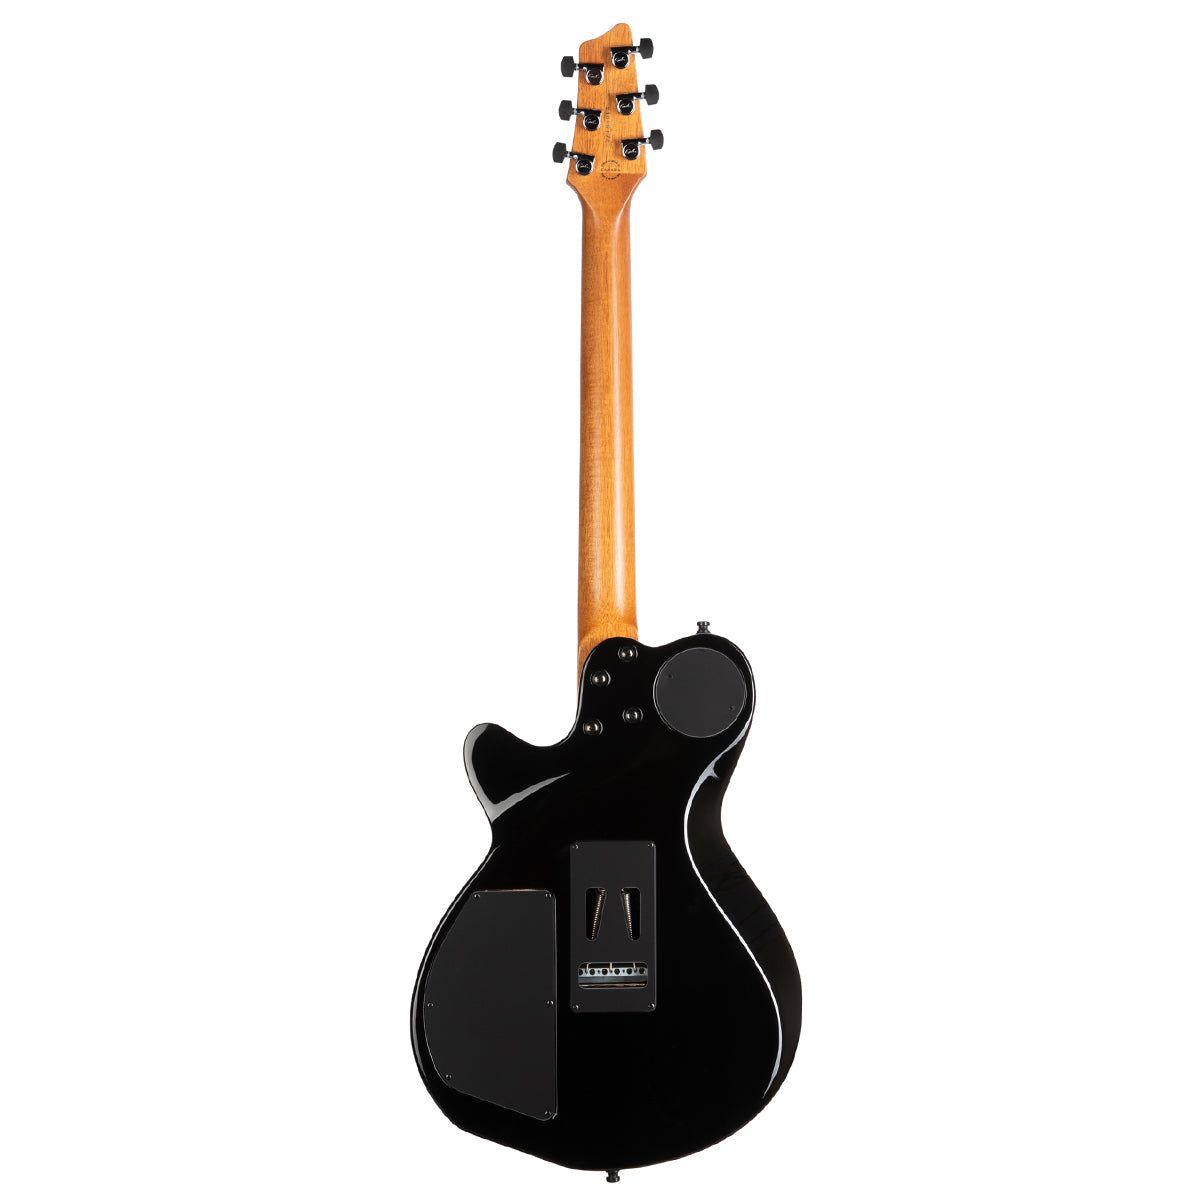 Godin LGXT 3 Voice Electric Guitar ~ Cognac Burst Flame, Electric Guitar for sale at Richards Guitars.